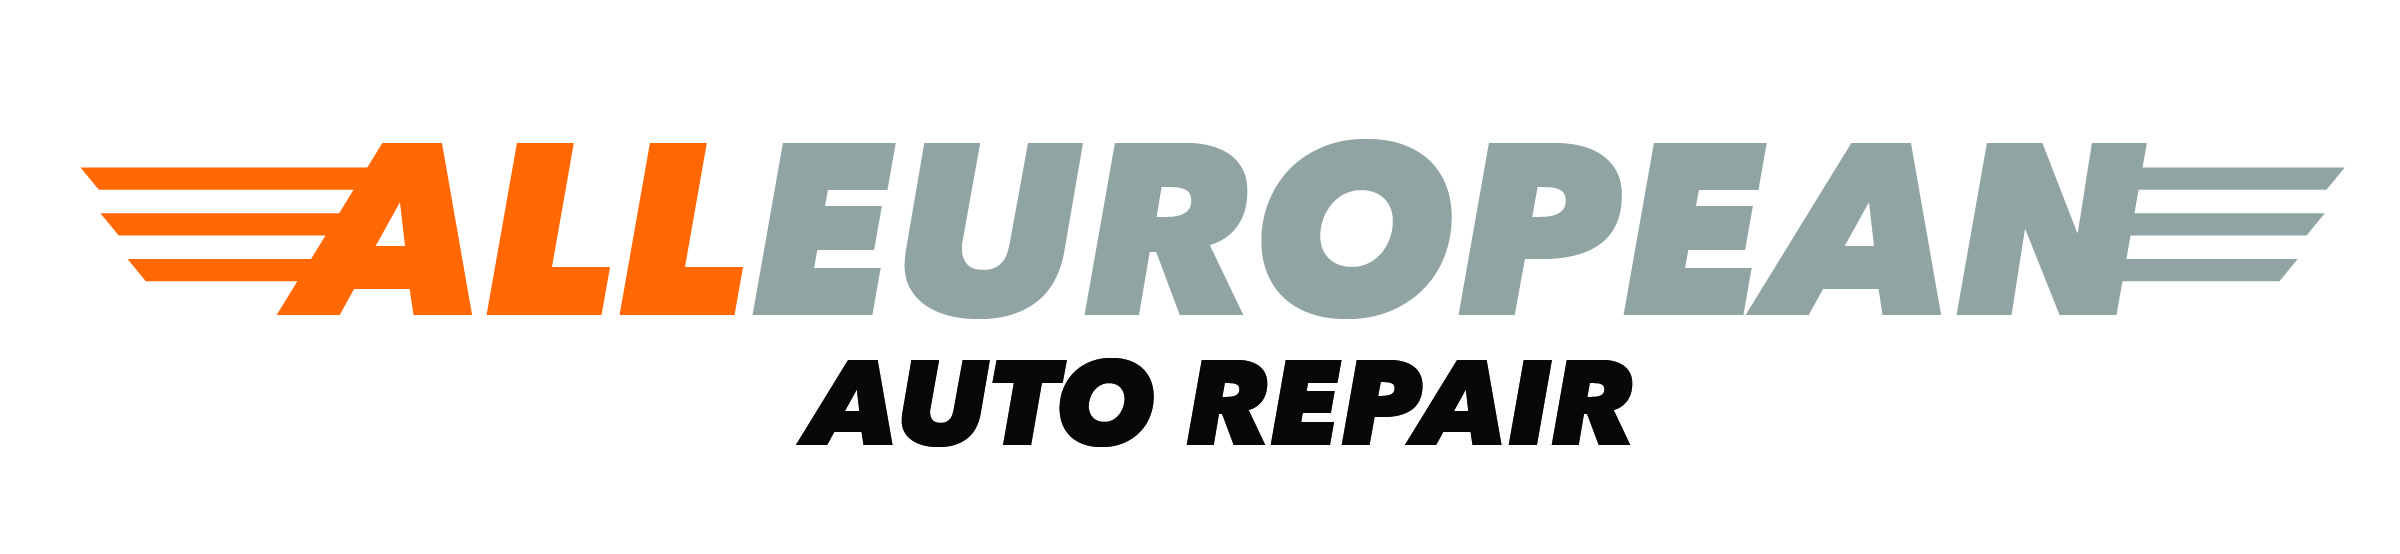 All-European-Auto-Repair.jpg